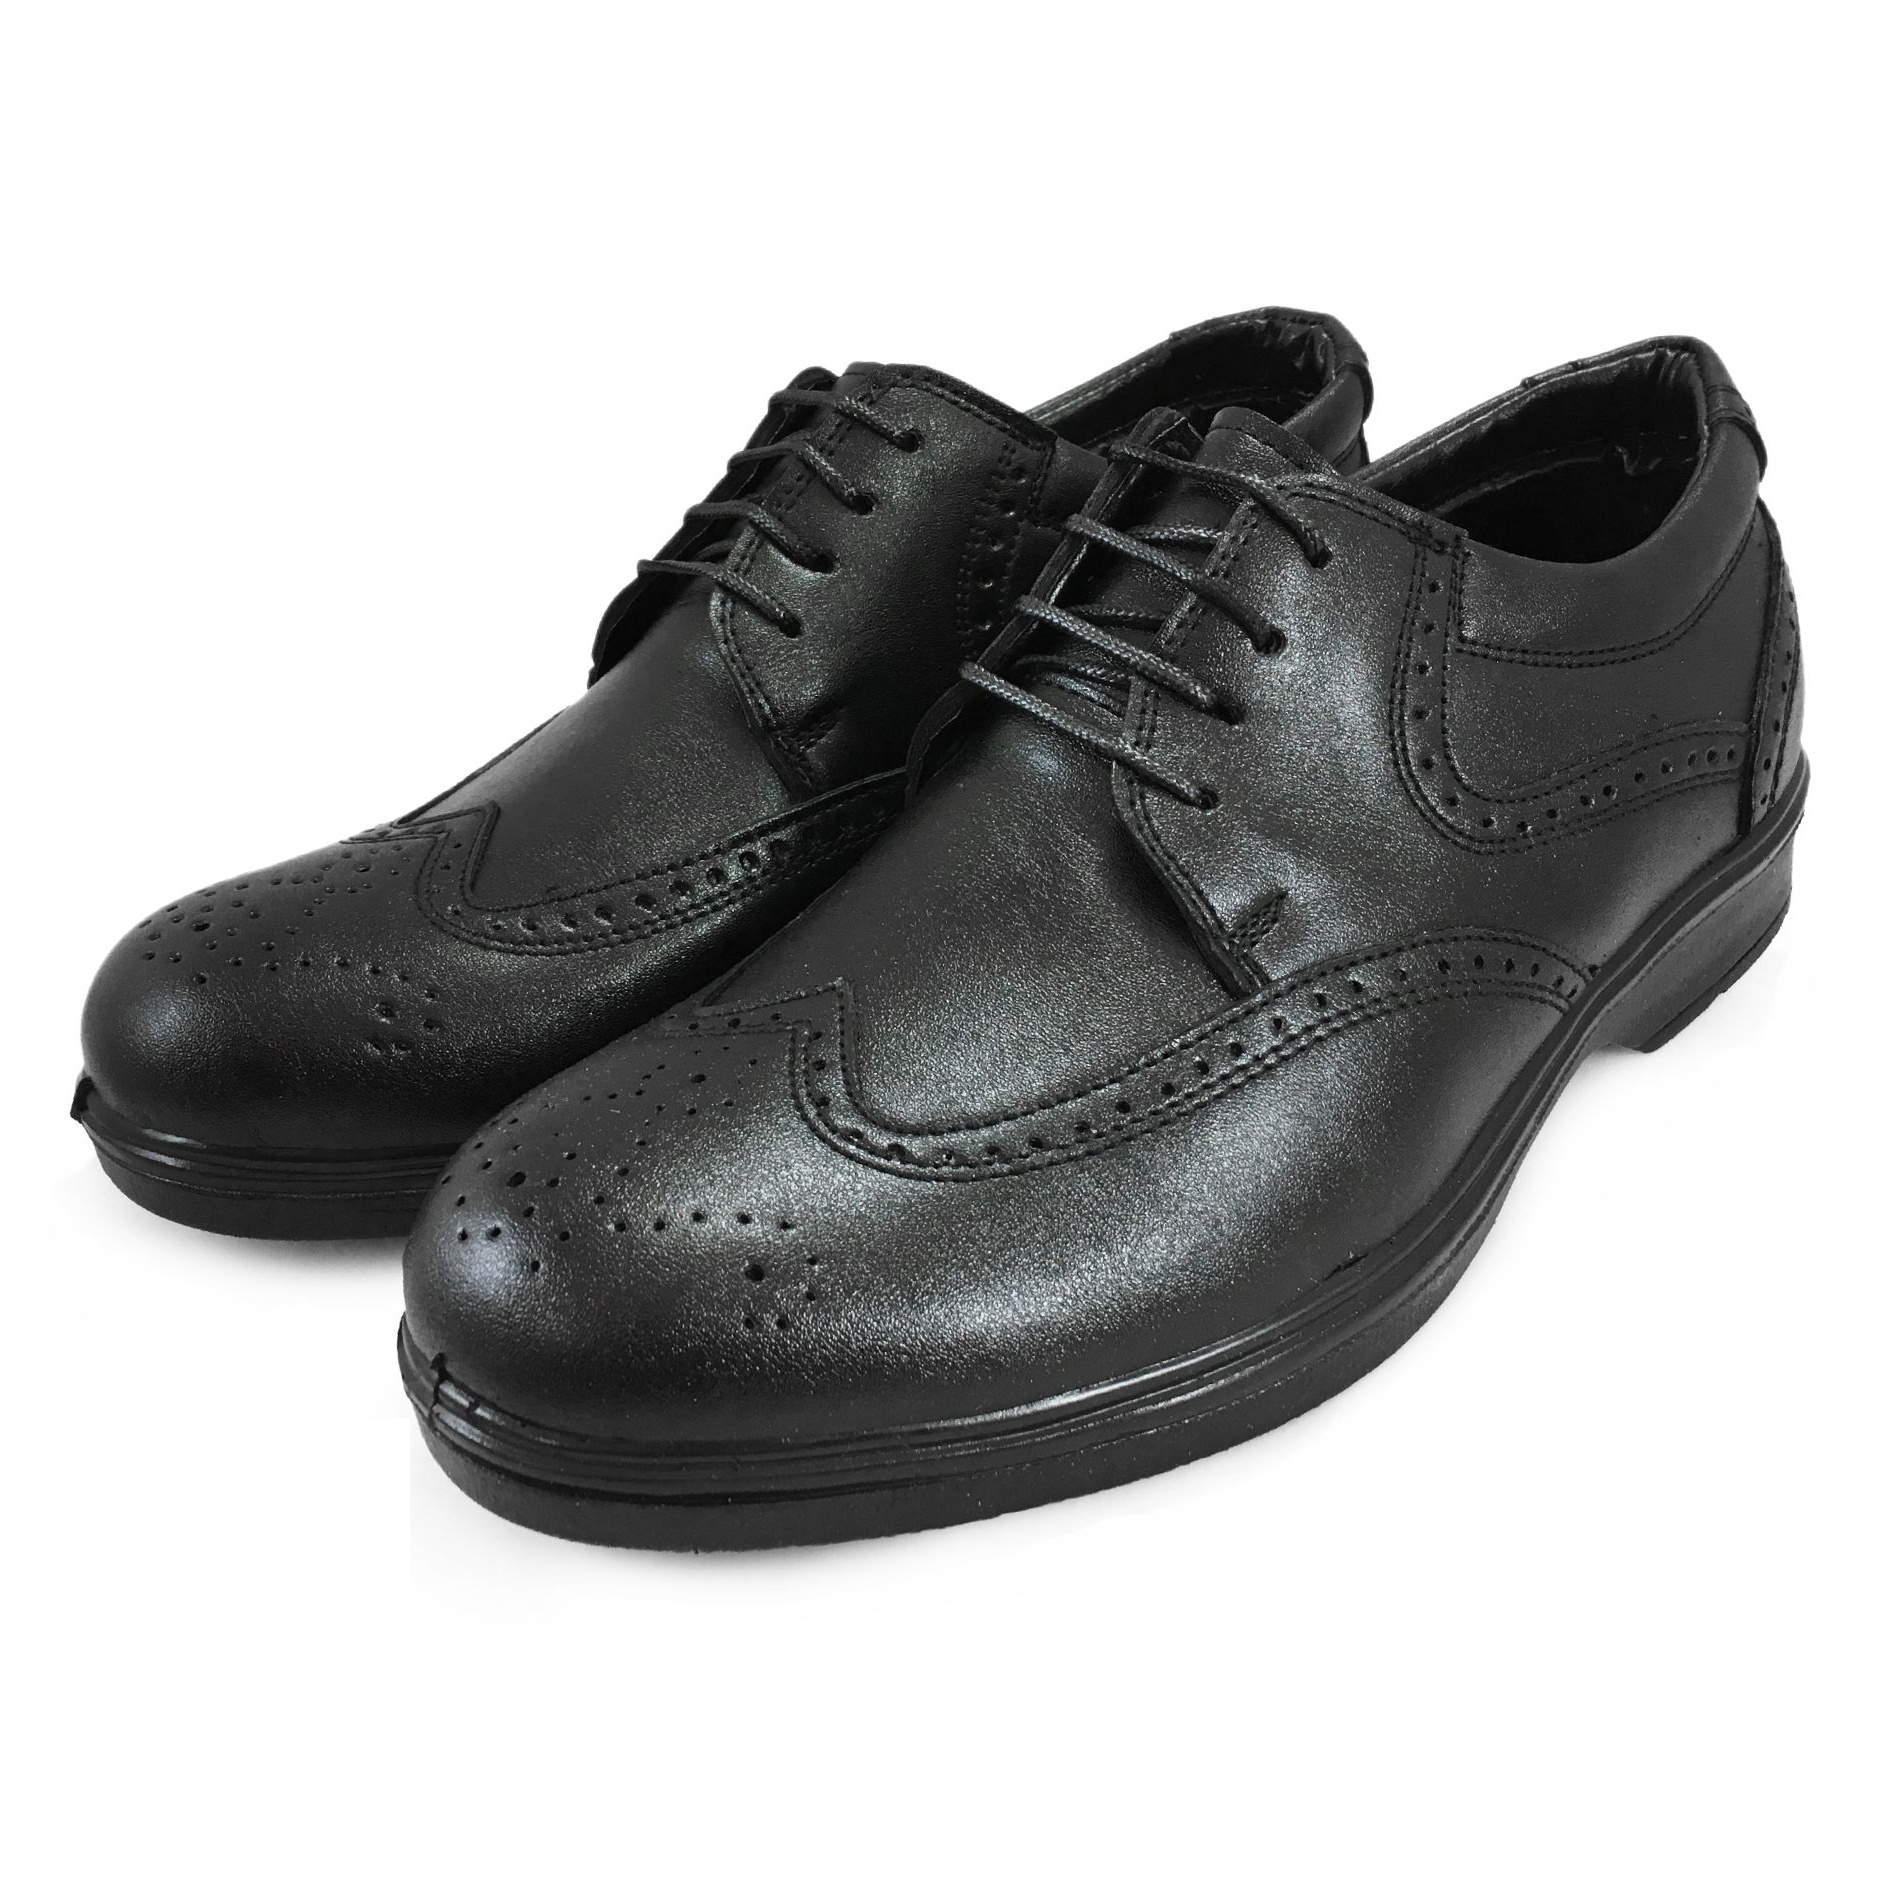 کفش مردانه مدل قاپوقی کد A134